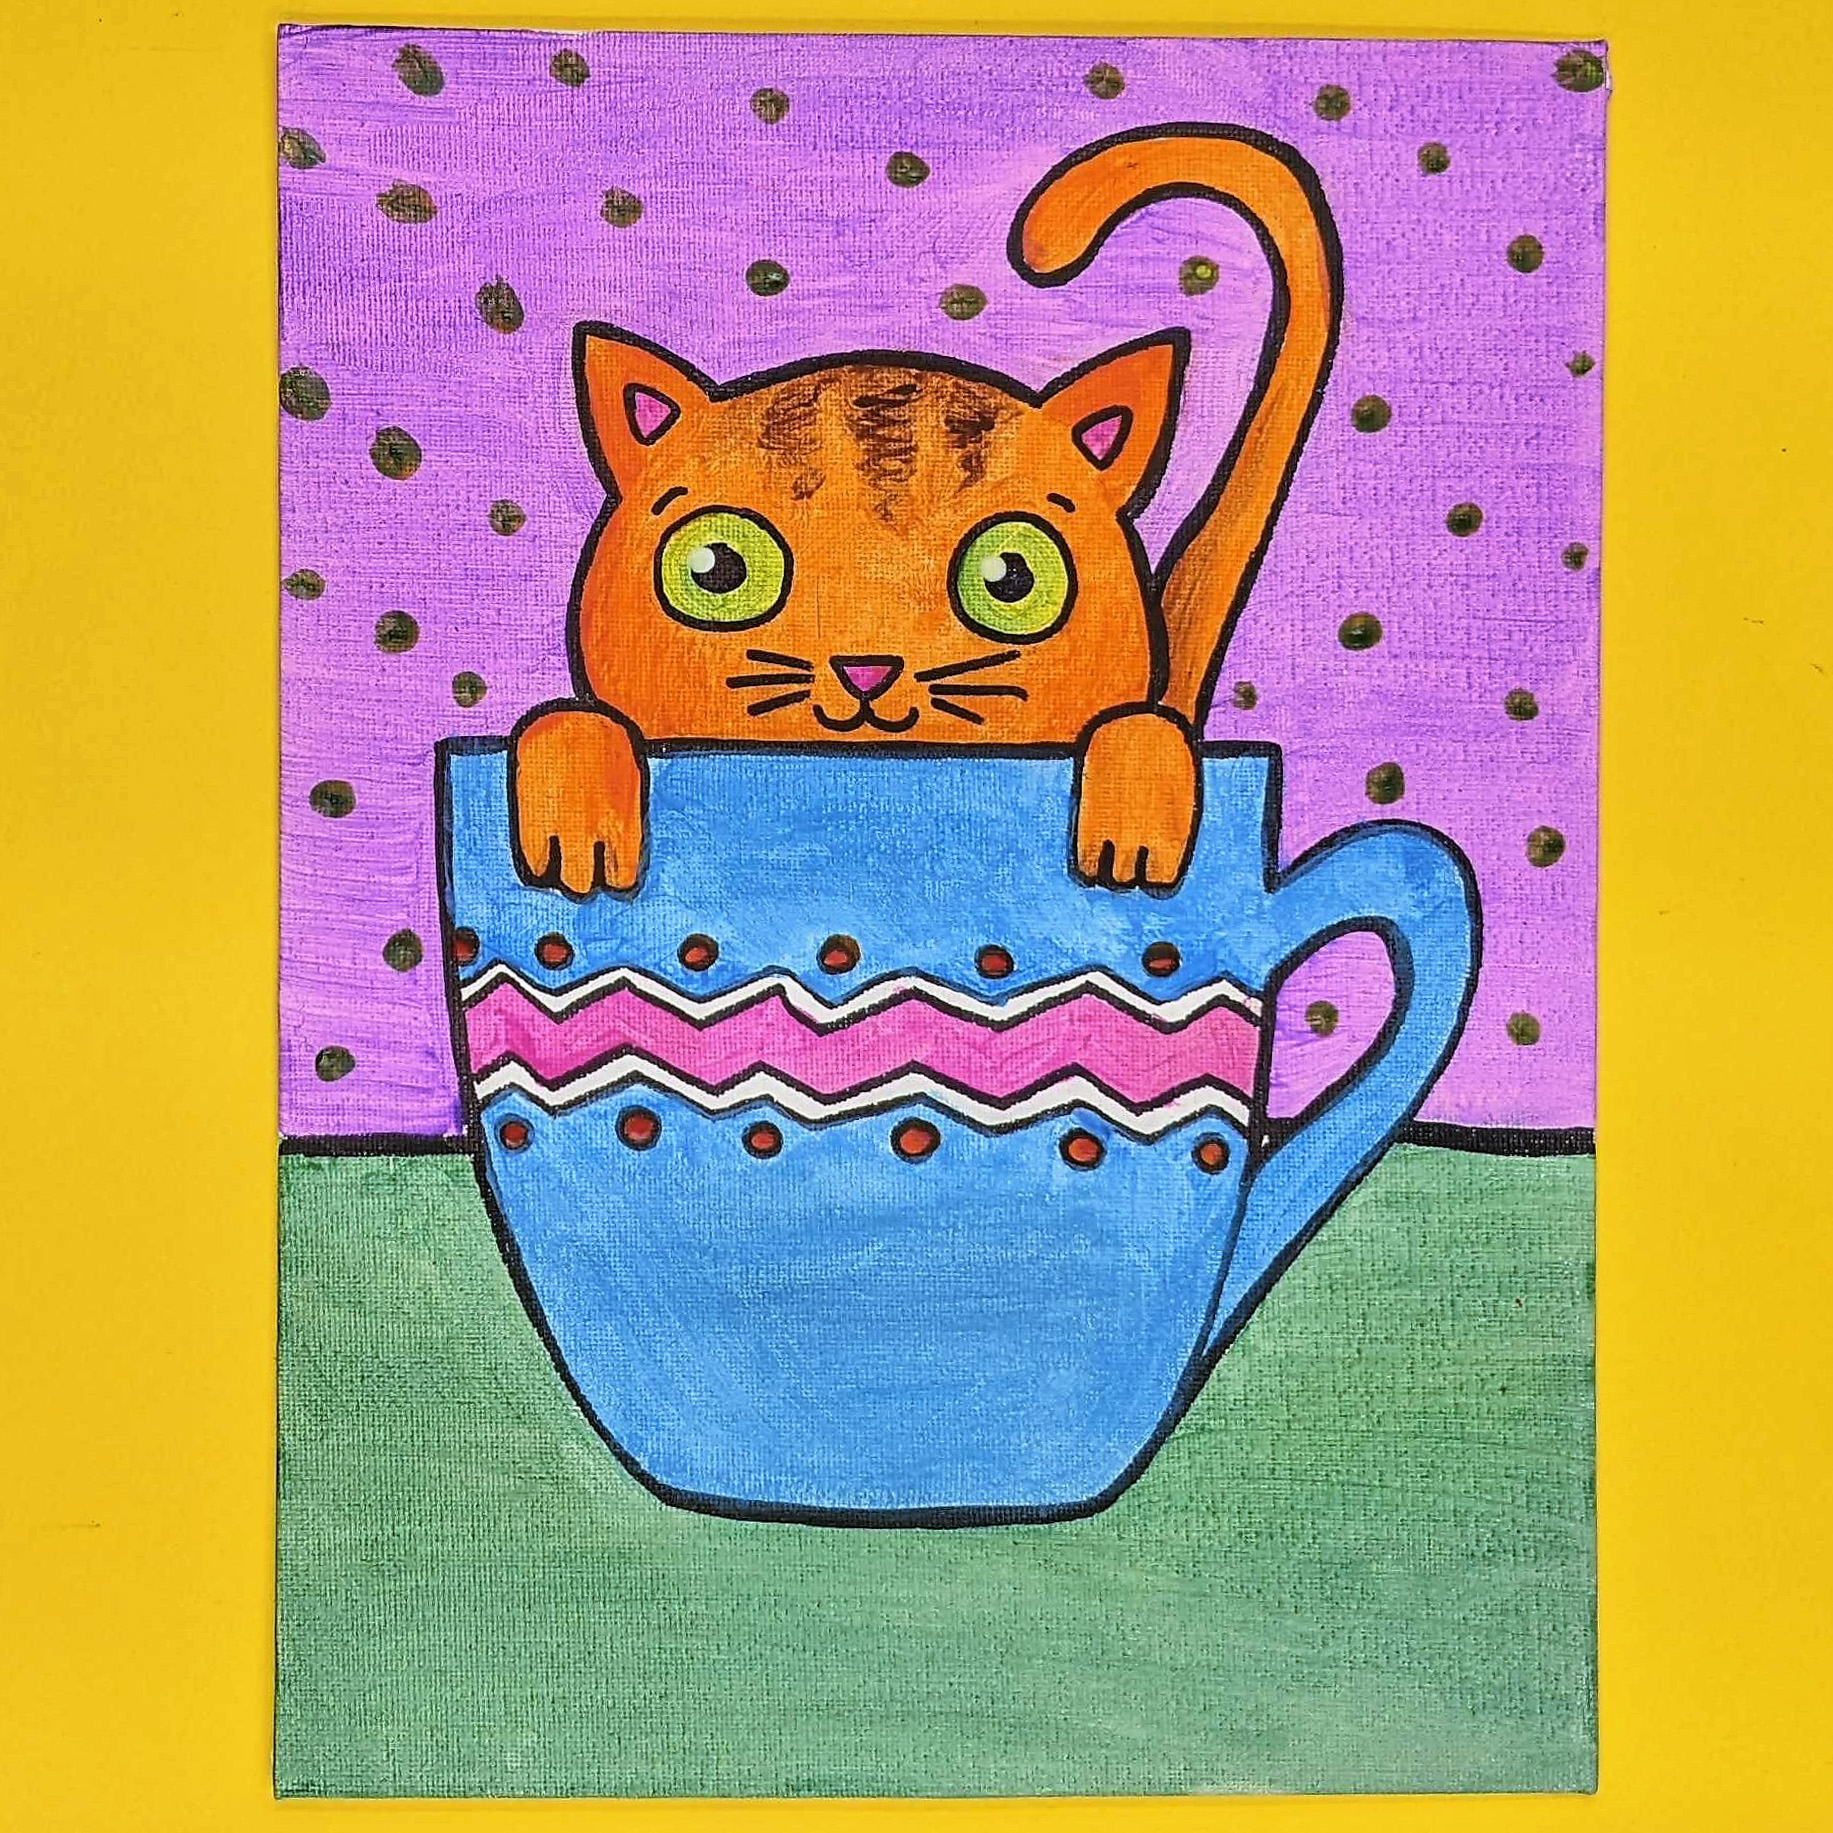 Kidcreate Studio - Newport News, Teacup Kitten Art Project